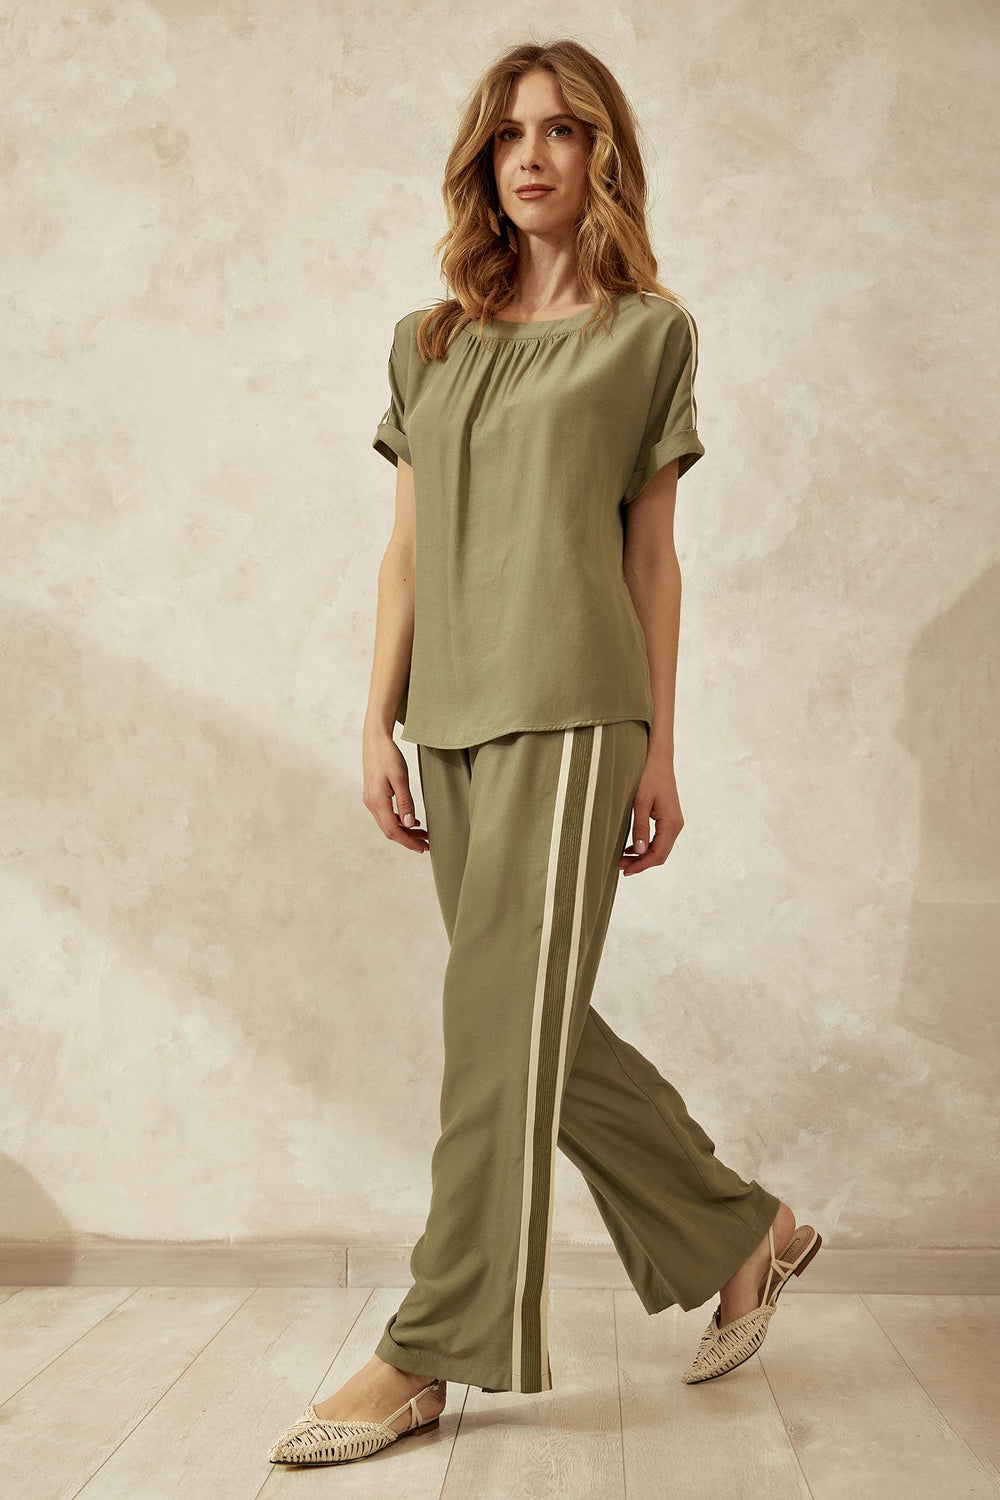 Μπλούζα με τρέσα και ρεβερ στο μανίκι Figaro Fashion - A Collection Boutique